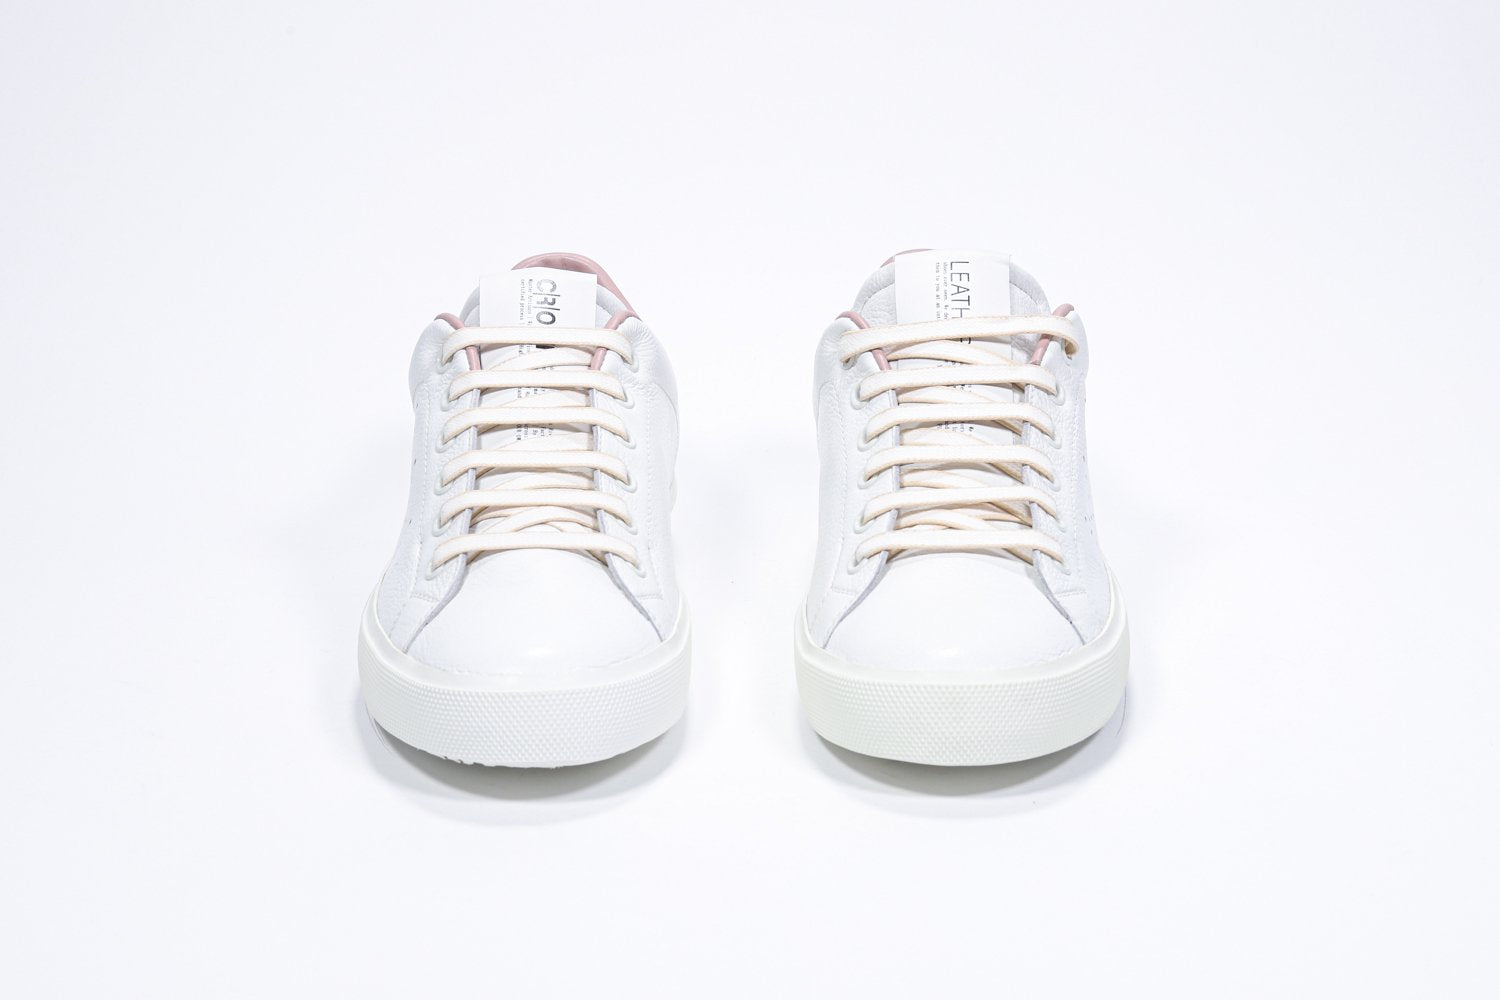 Vue de face de la chaussure blanche sneaker avec des détails rose pâle et le logo perforé de la couronne sur l'empeigne. Tige en cuir et semelle en caoutchouc blanc.